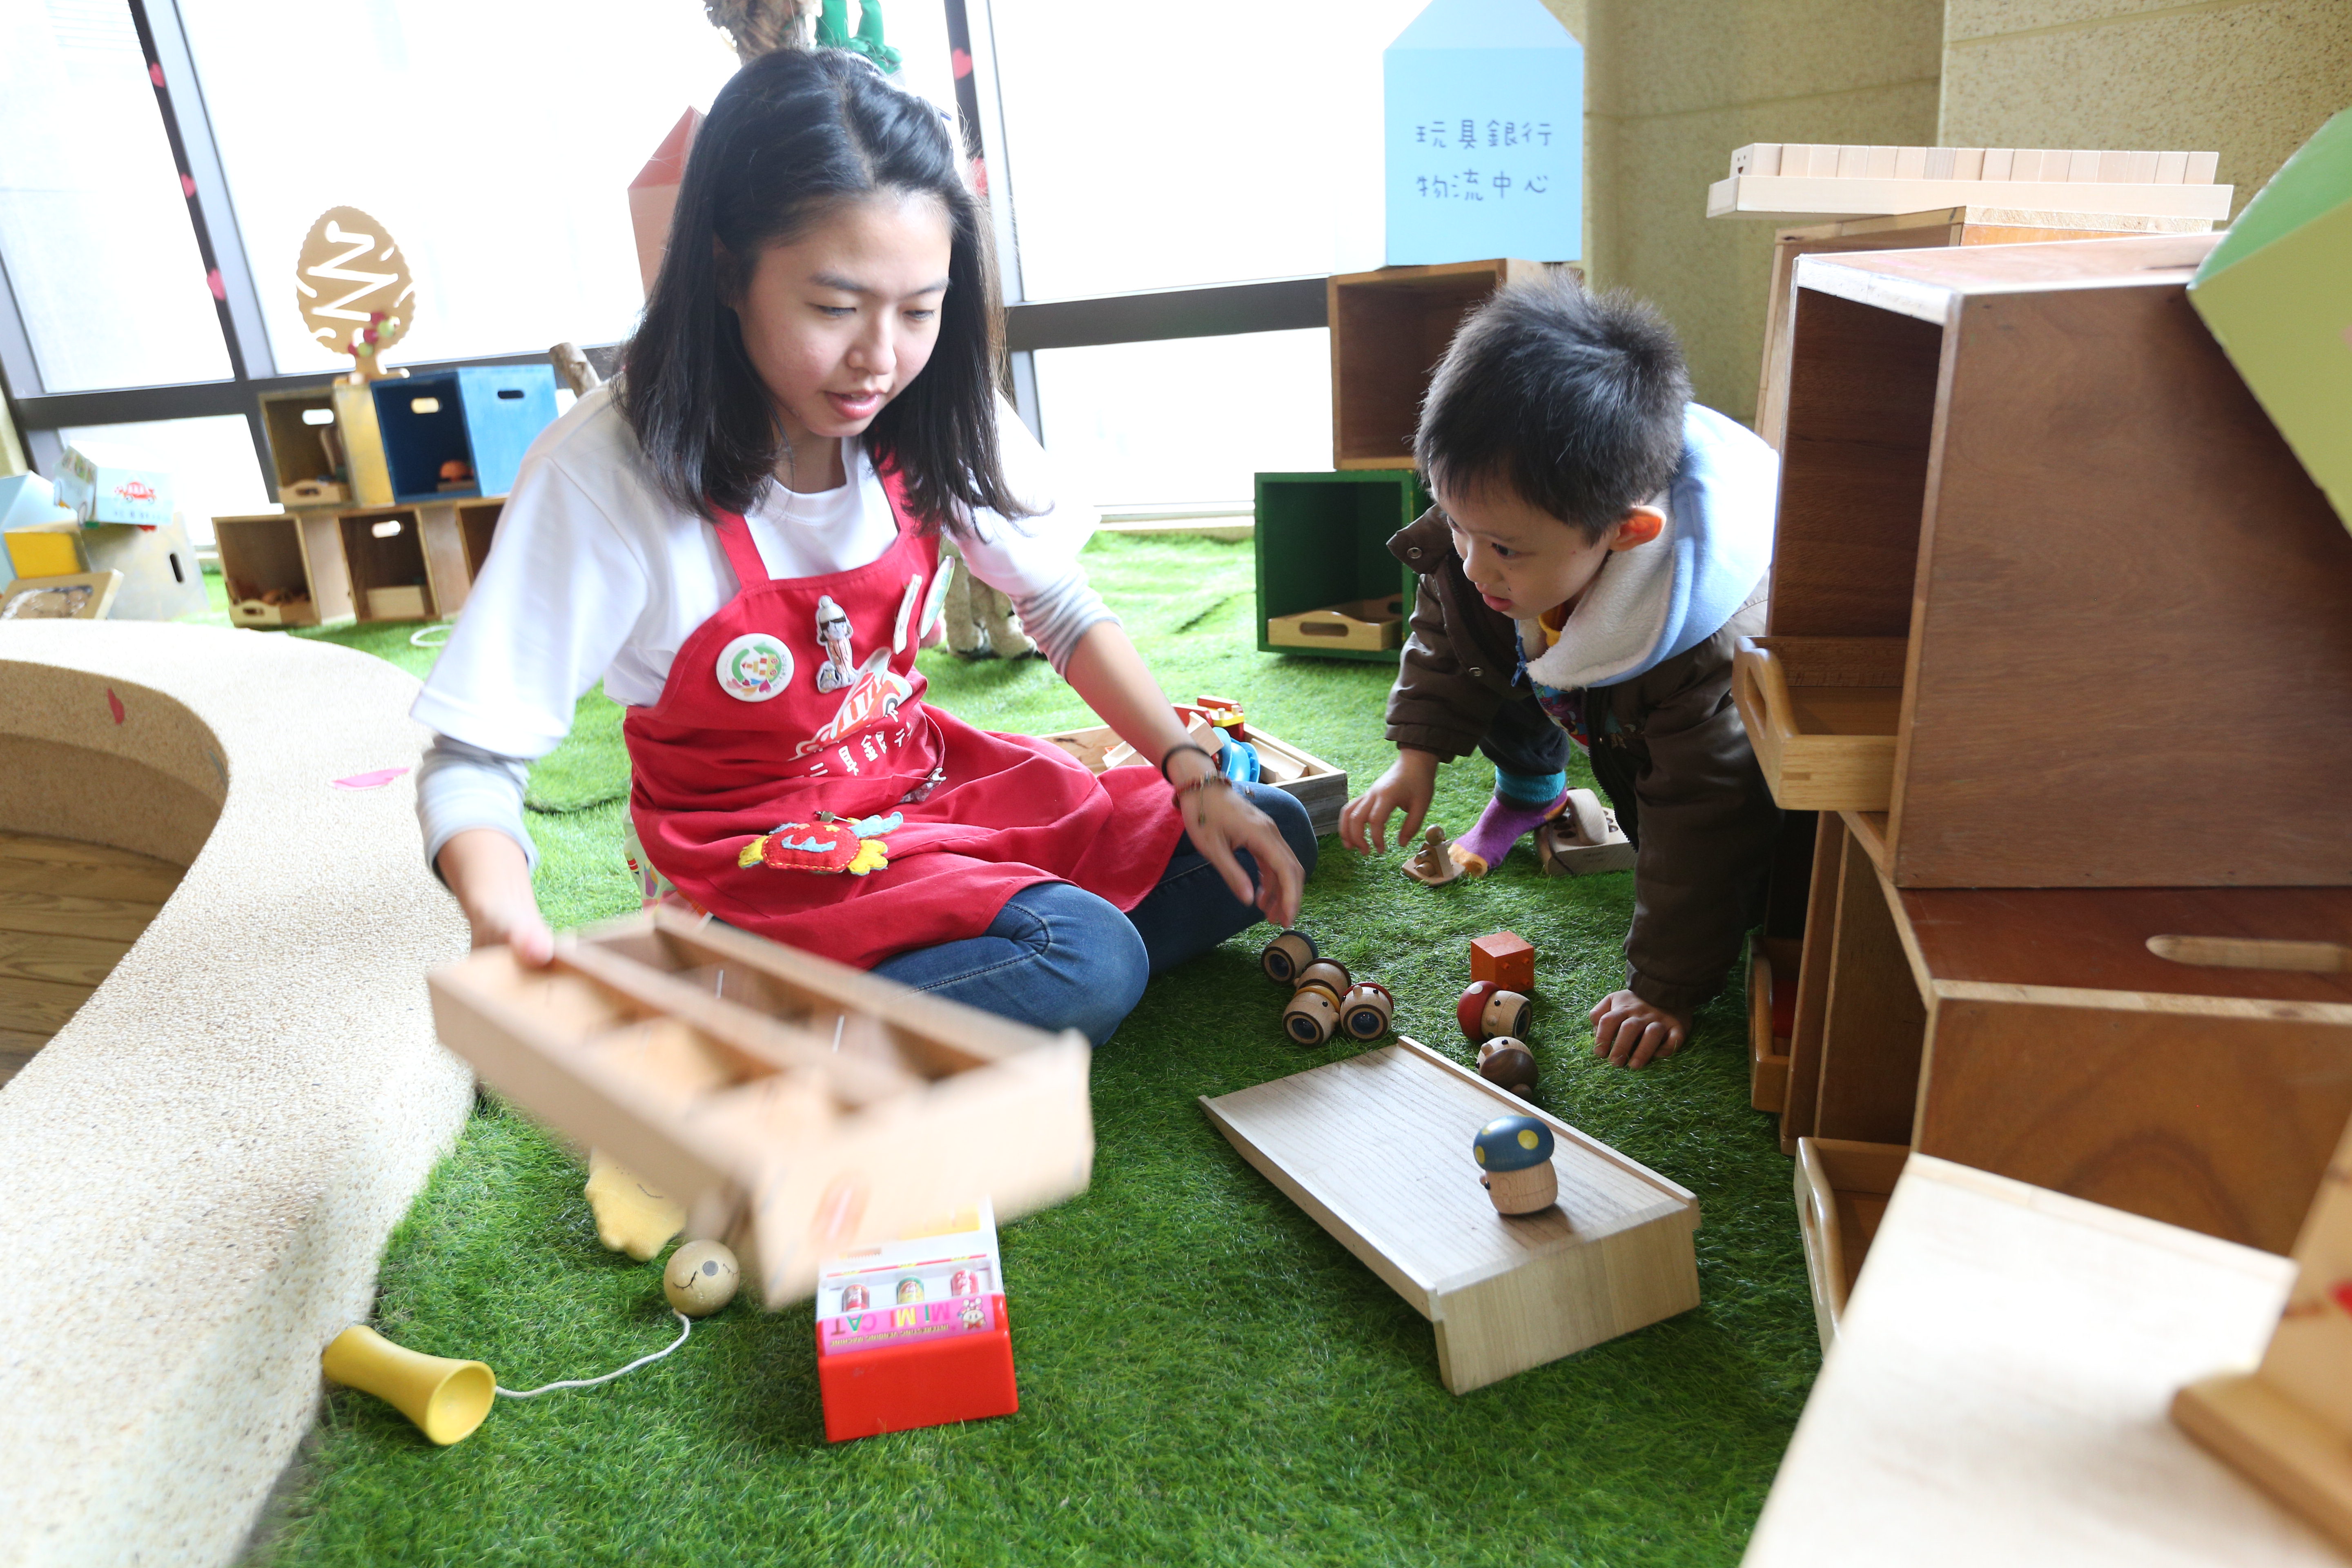  玩聚窩提供適合0-6歲孩童玩具